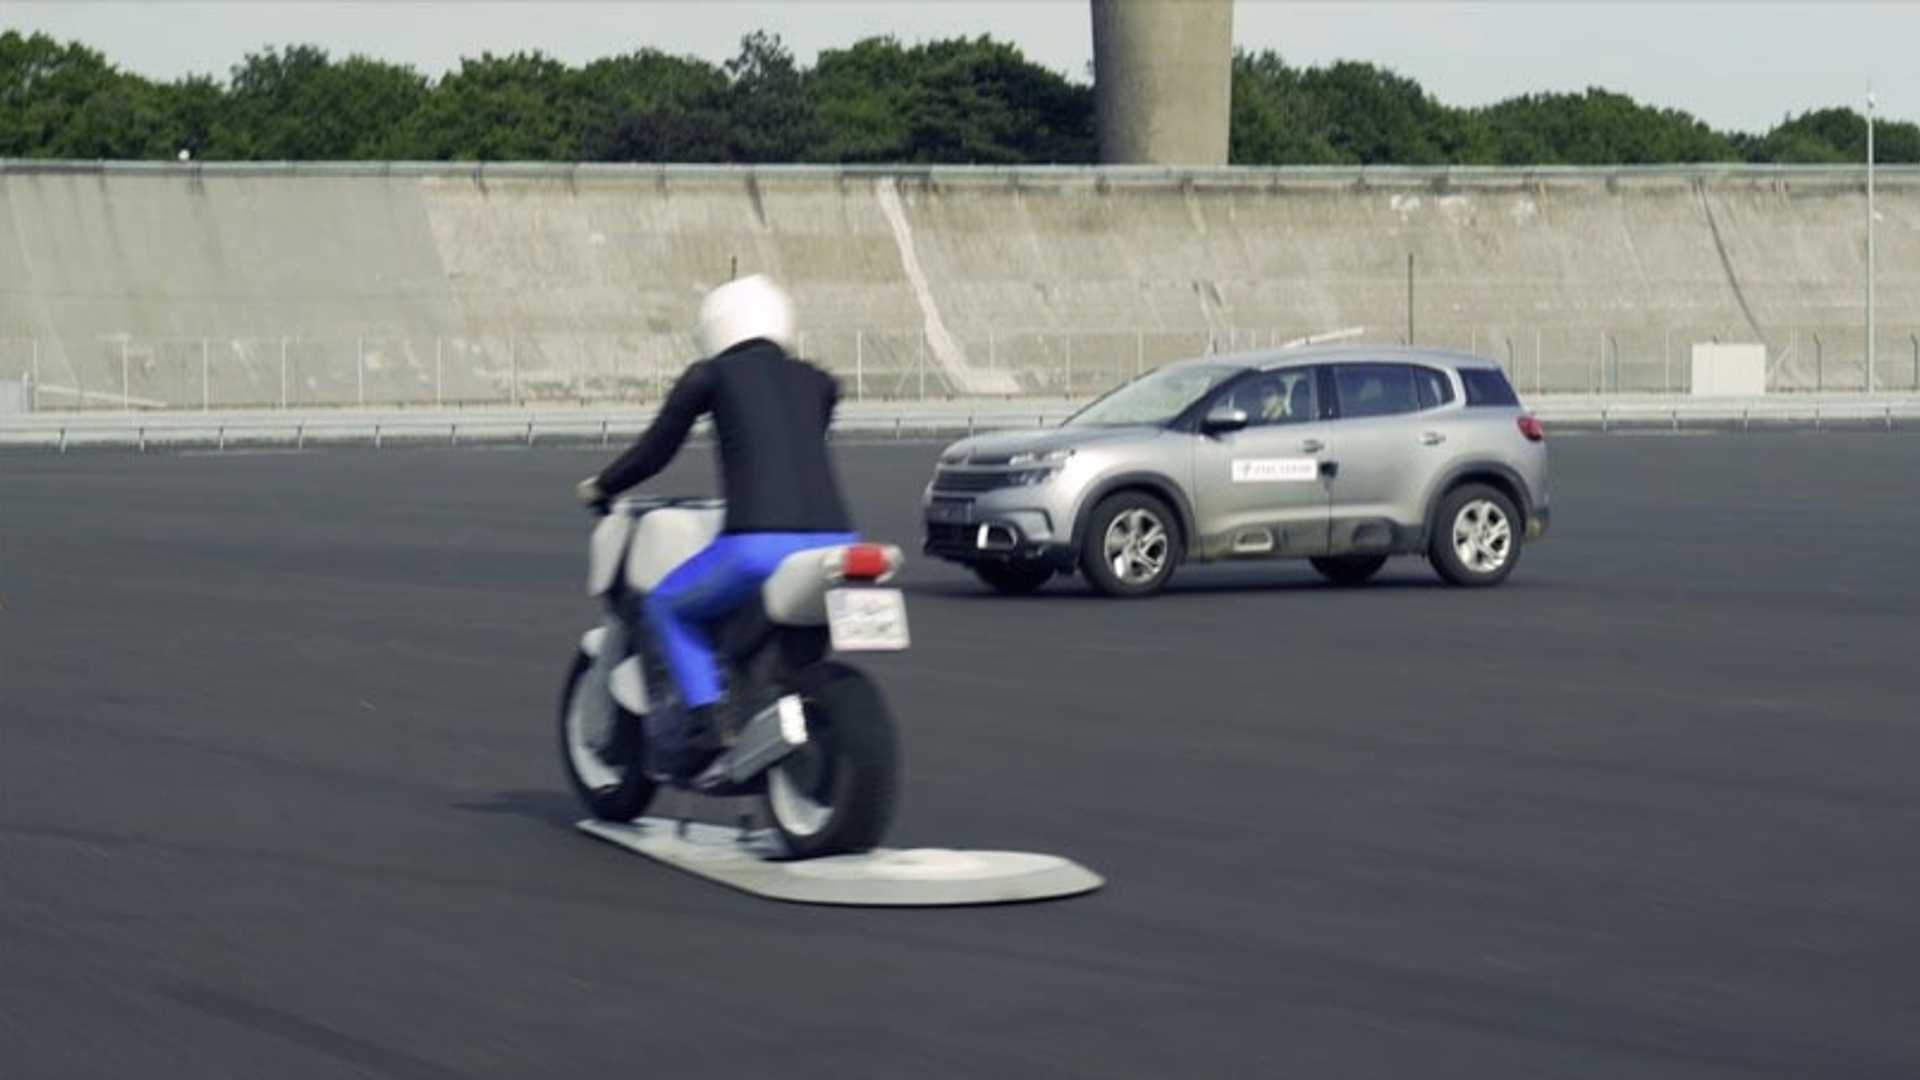 [Street] Les motos pourraient bientôt être détectées par les voitures et certains accidents évités [Vidéo]